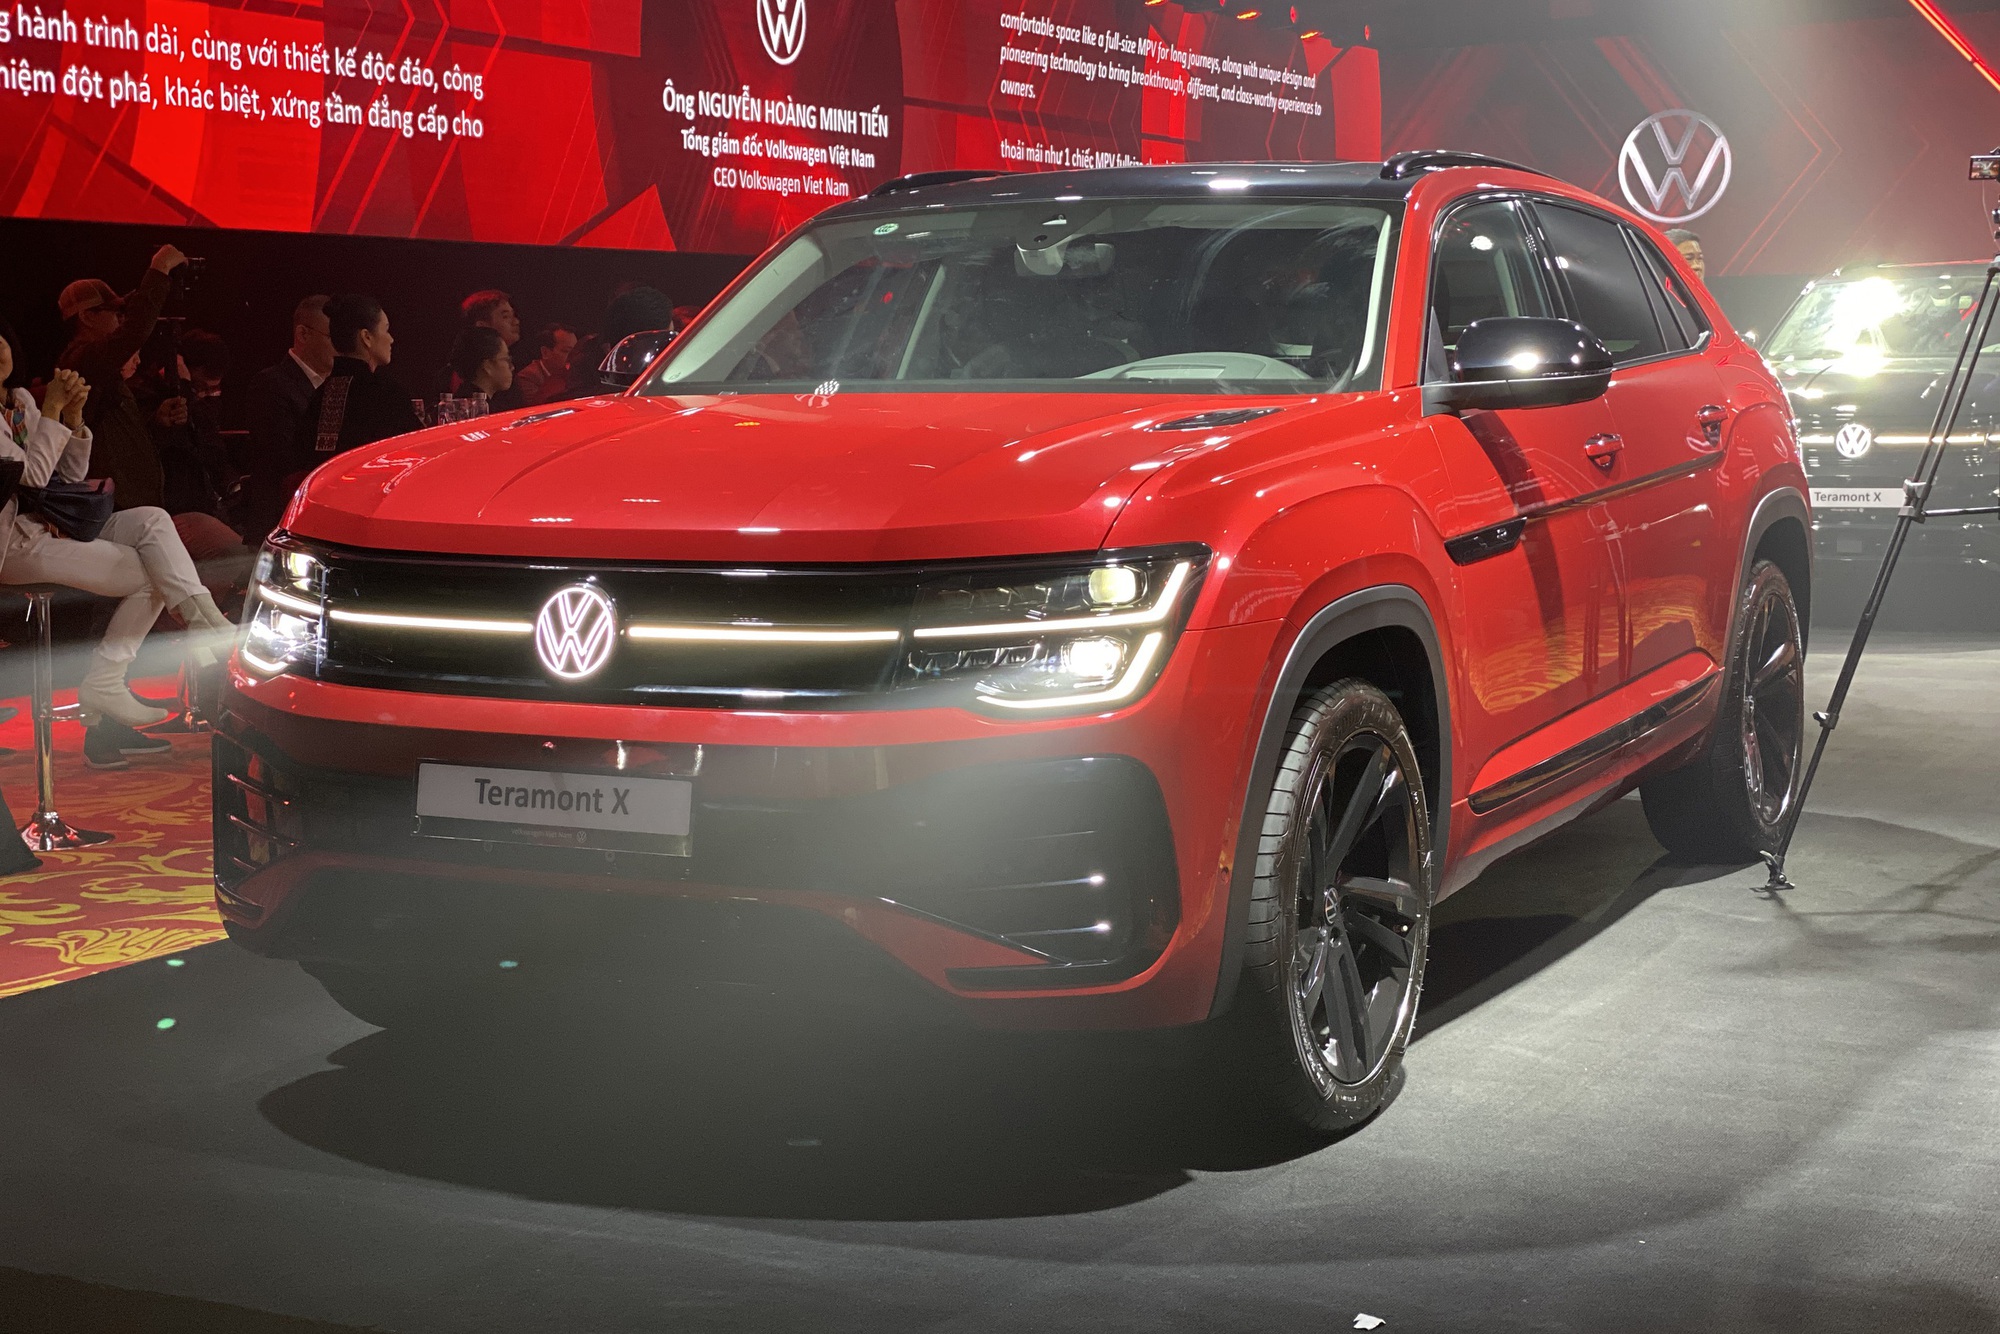 VW Teramont X ra mắt Việt Nam: Giá từ 1,998 tỷ, 2 phiên bản, nhiều công nghệ, đấu Explorer bằng giá rẻ hơn đúng 1 triệu đồng- Ảnh 3.